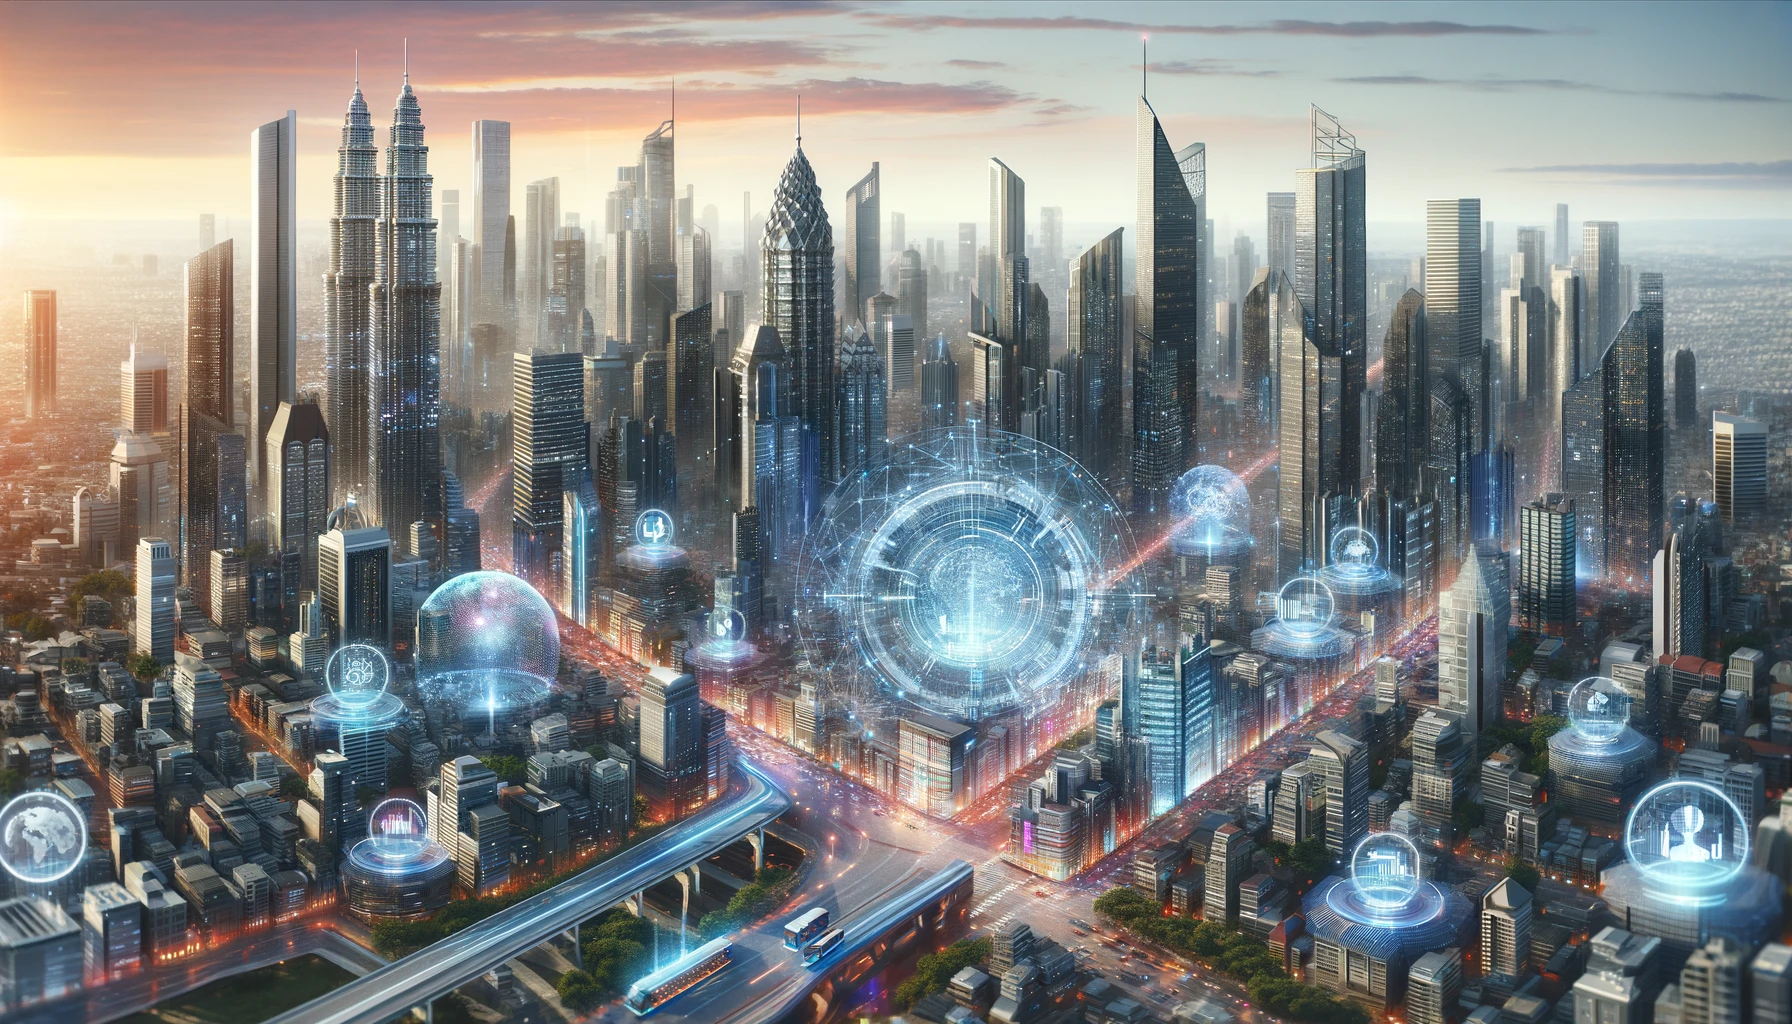 depictions of AI over a city landscape